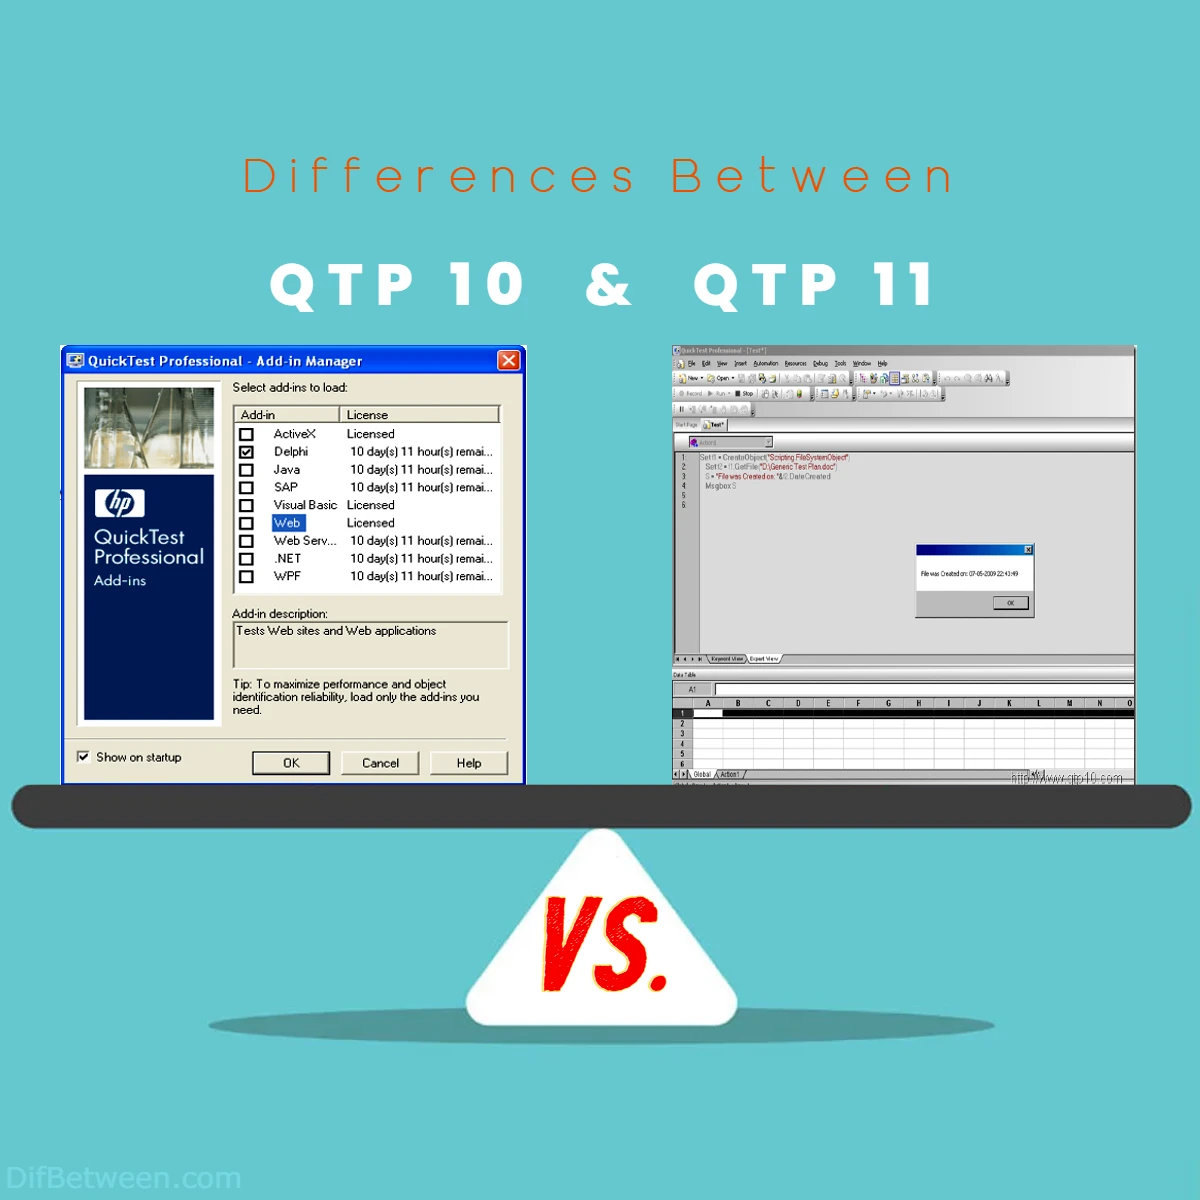 Differences Between QTP 10 vs QTP 11